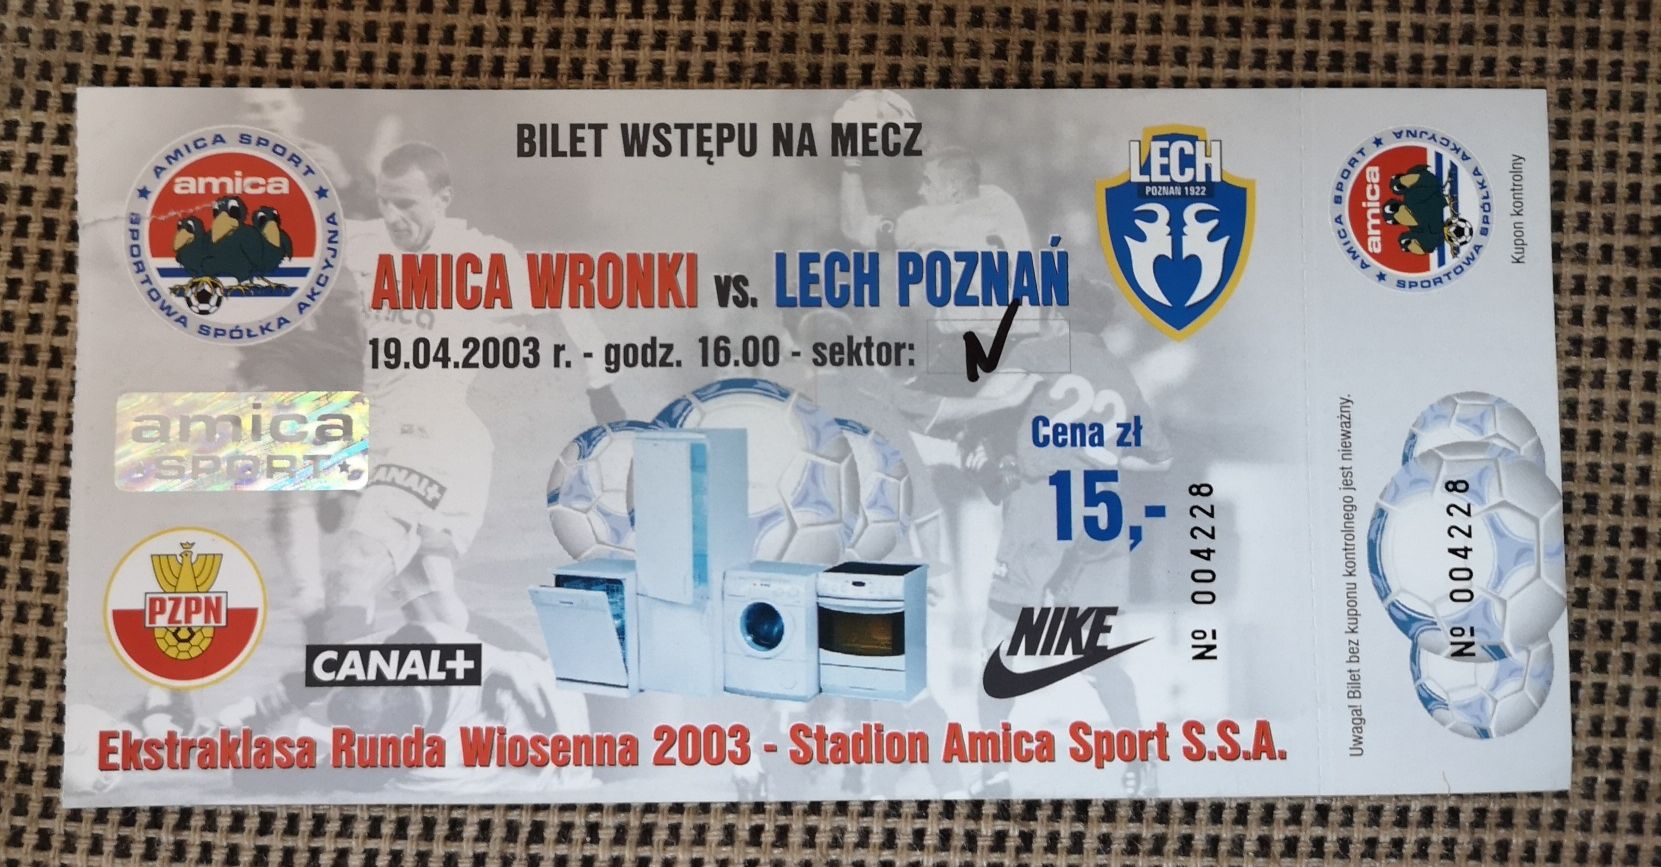 Bilet meczowy Amica Wronki vs. Lech Poznań 2003 Ekstraklasa